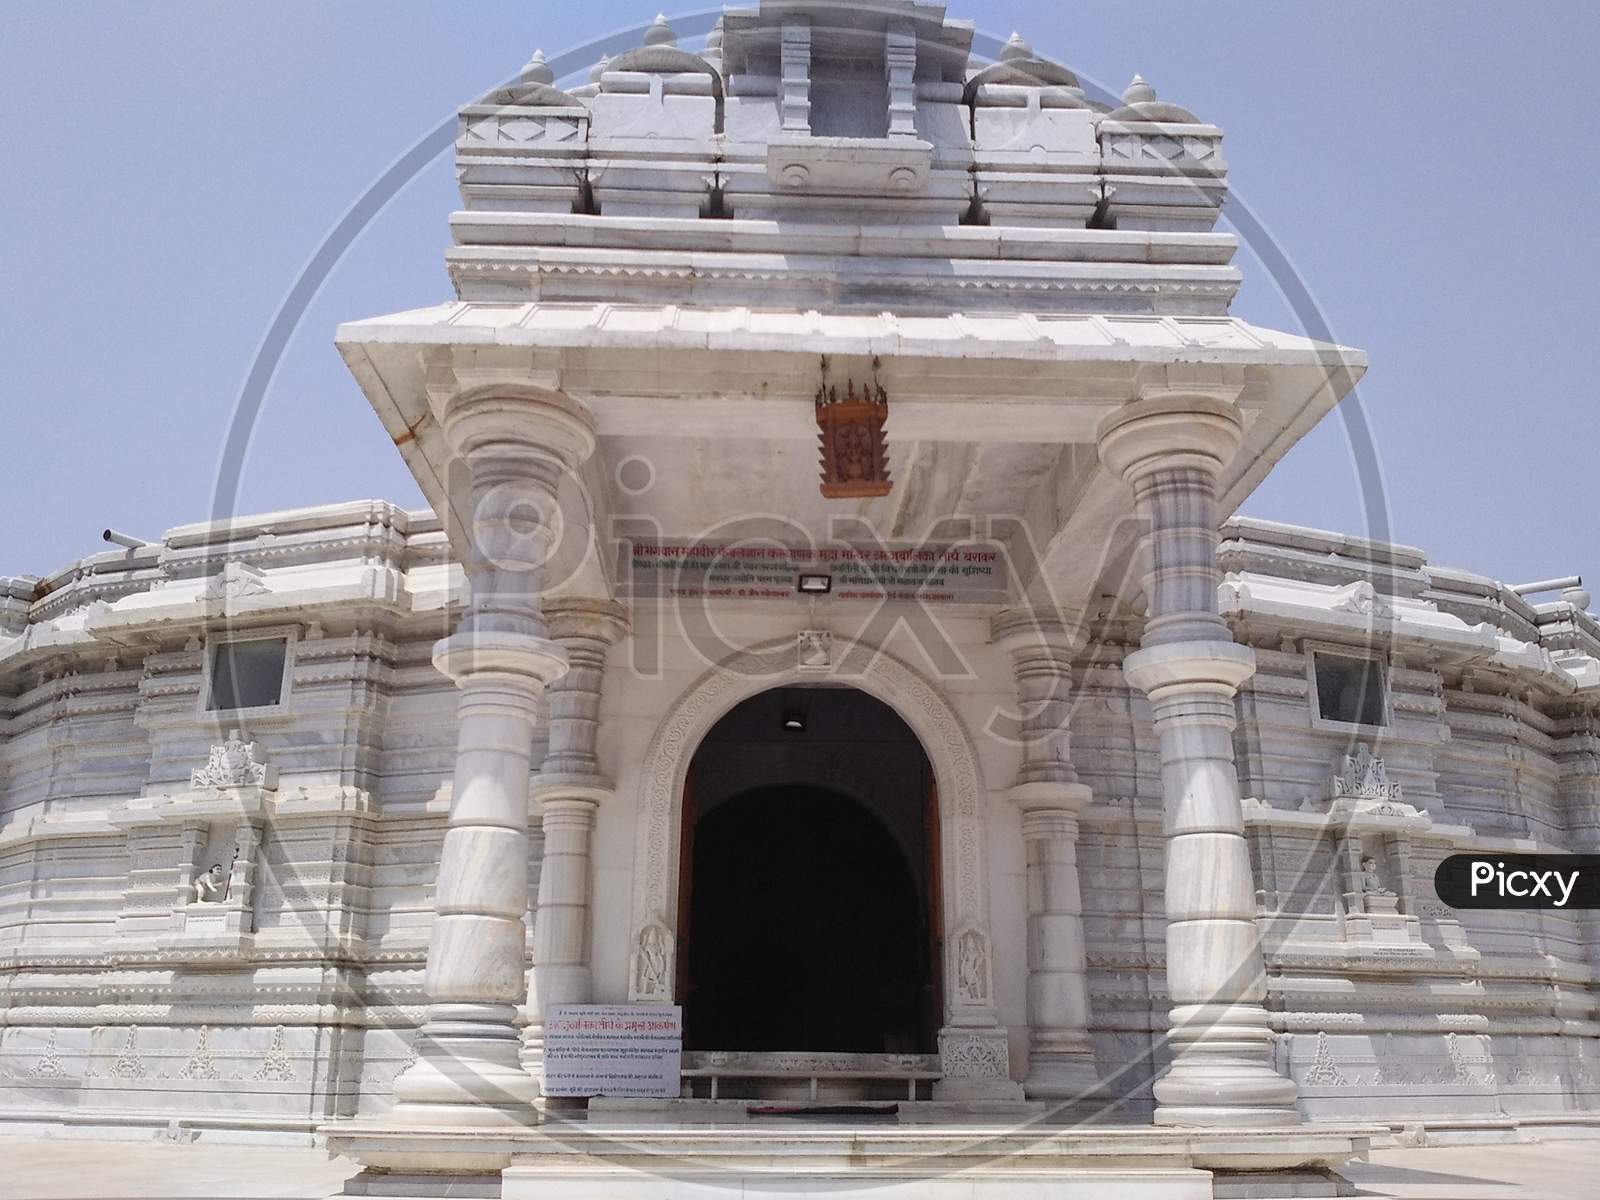 Entrance of Rijuvalika Jain temple